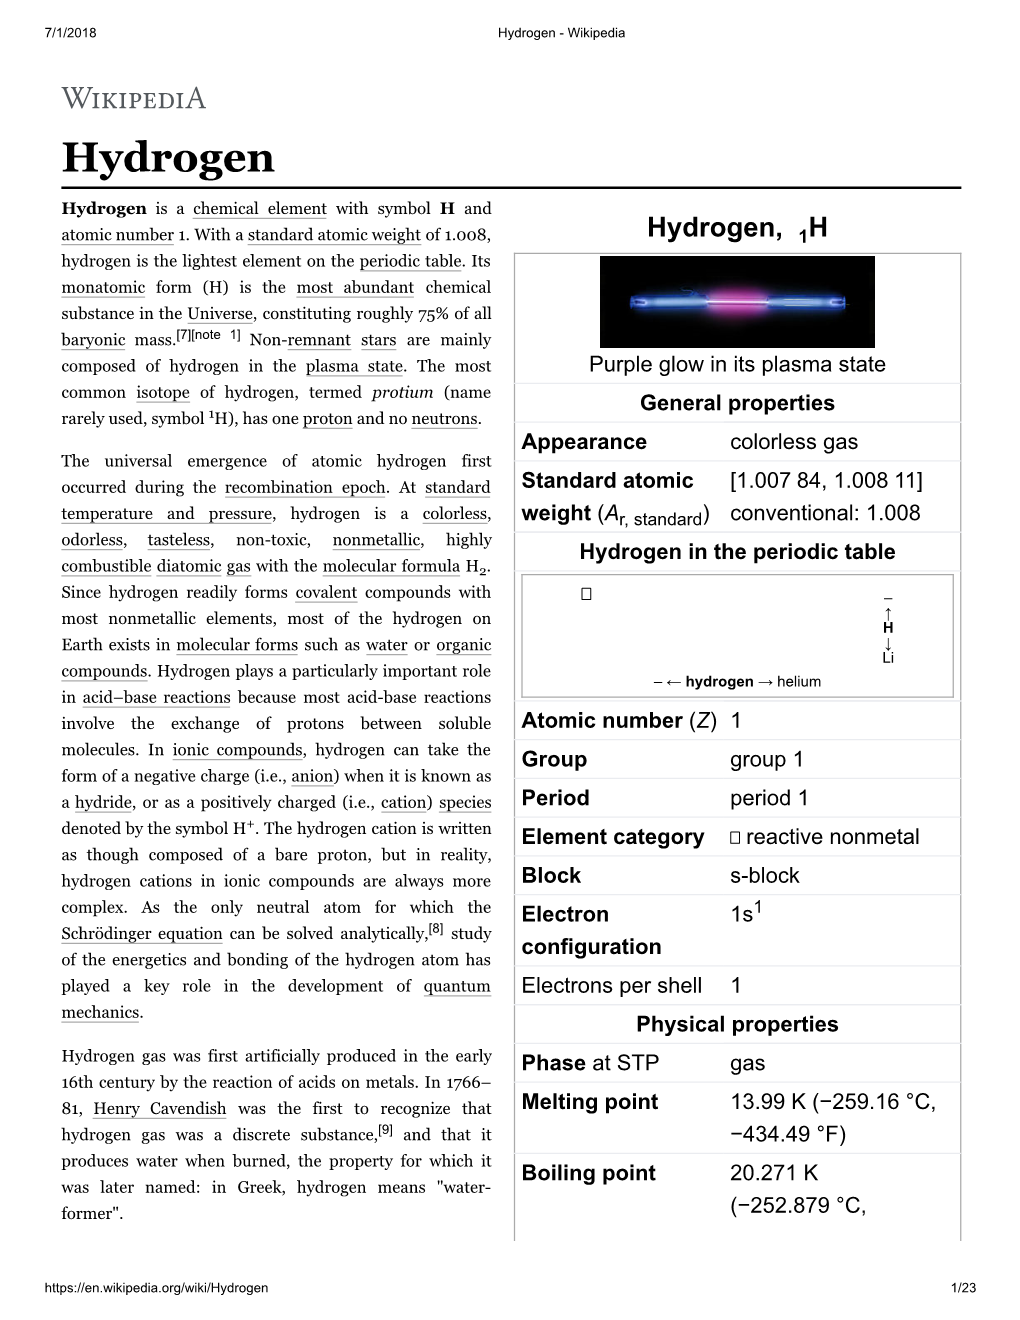 Hydrogen - Wikipedia